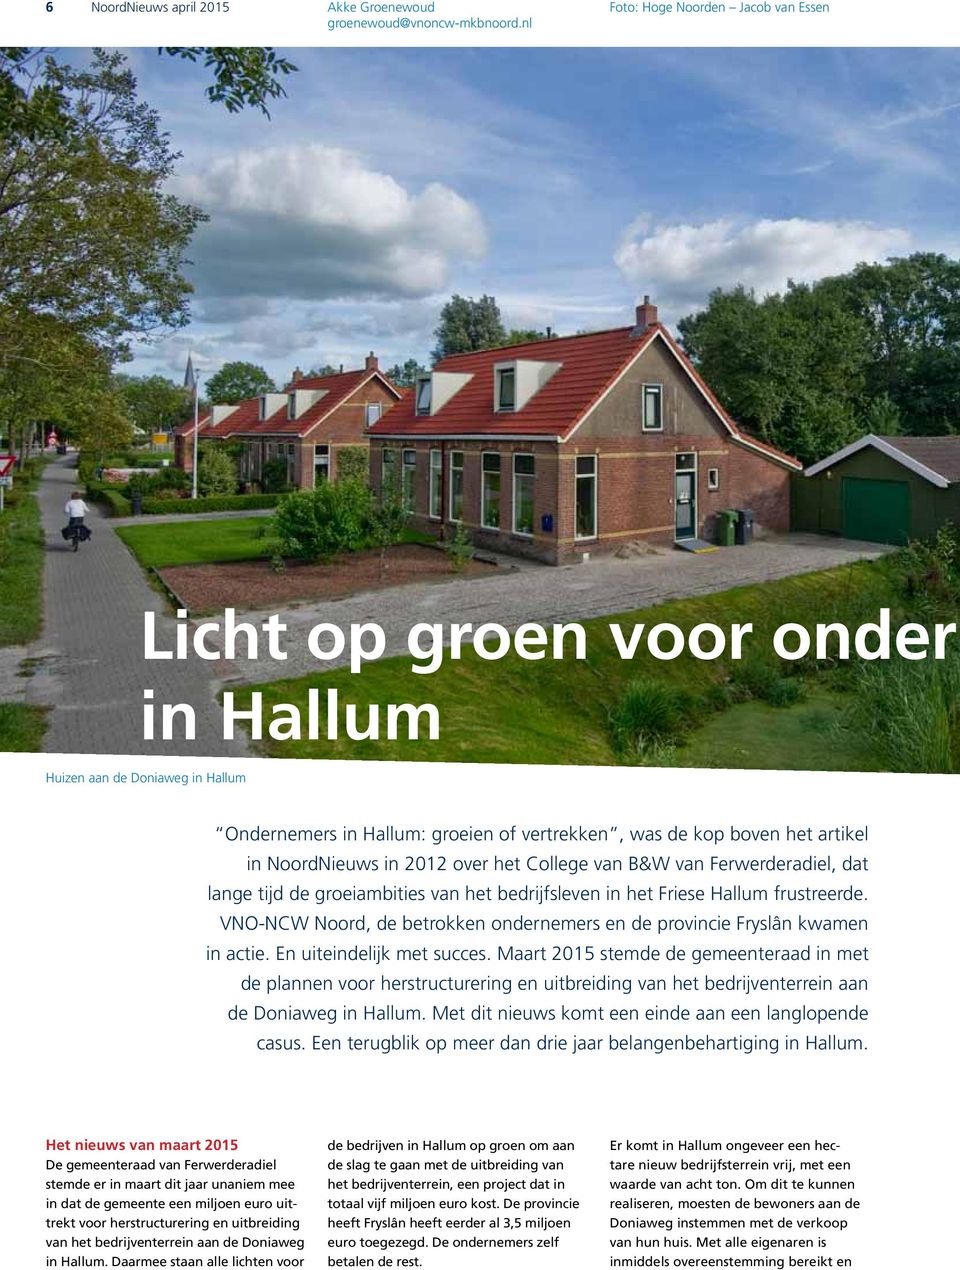 2012 over het College van B&W van Ferwerderadiel, dat lange tijd de groeiambities van het bedrijfsleven in het Friese Hallum frustreerde.